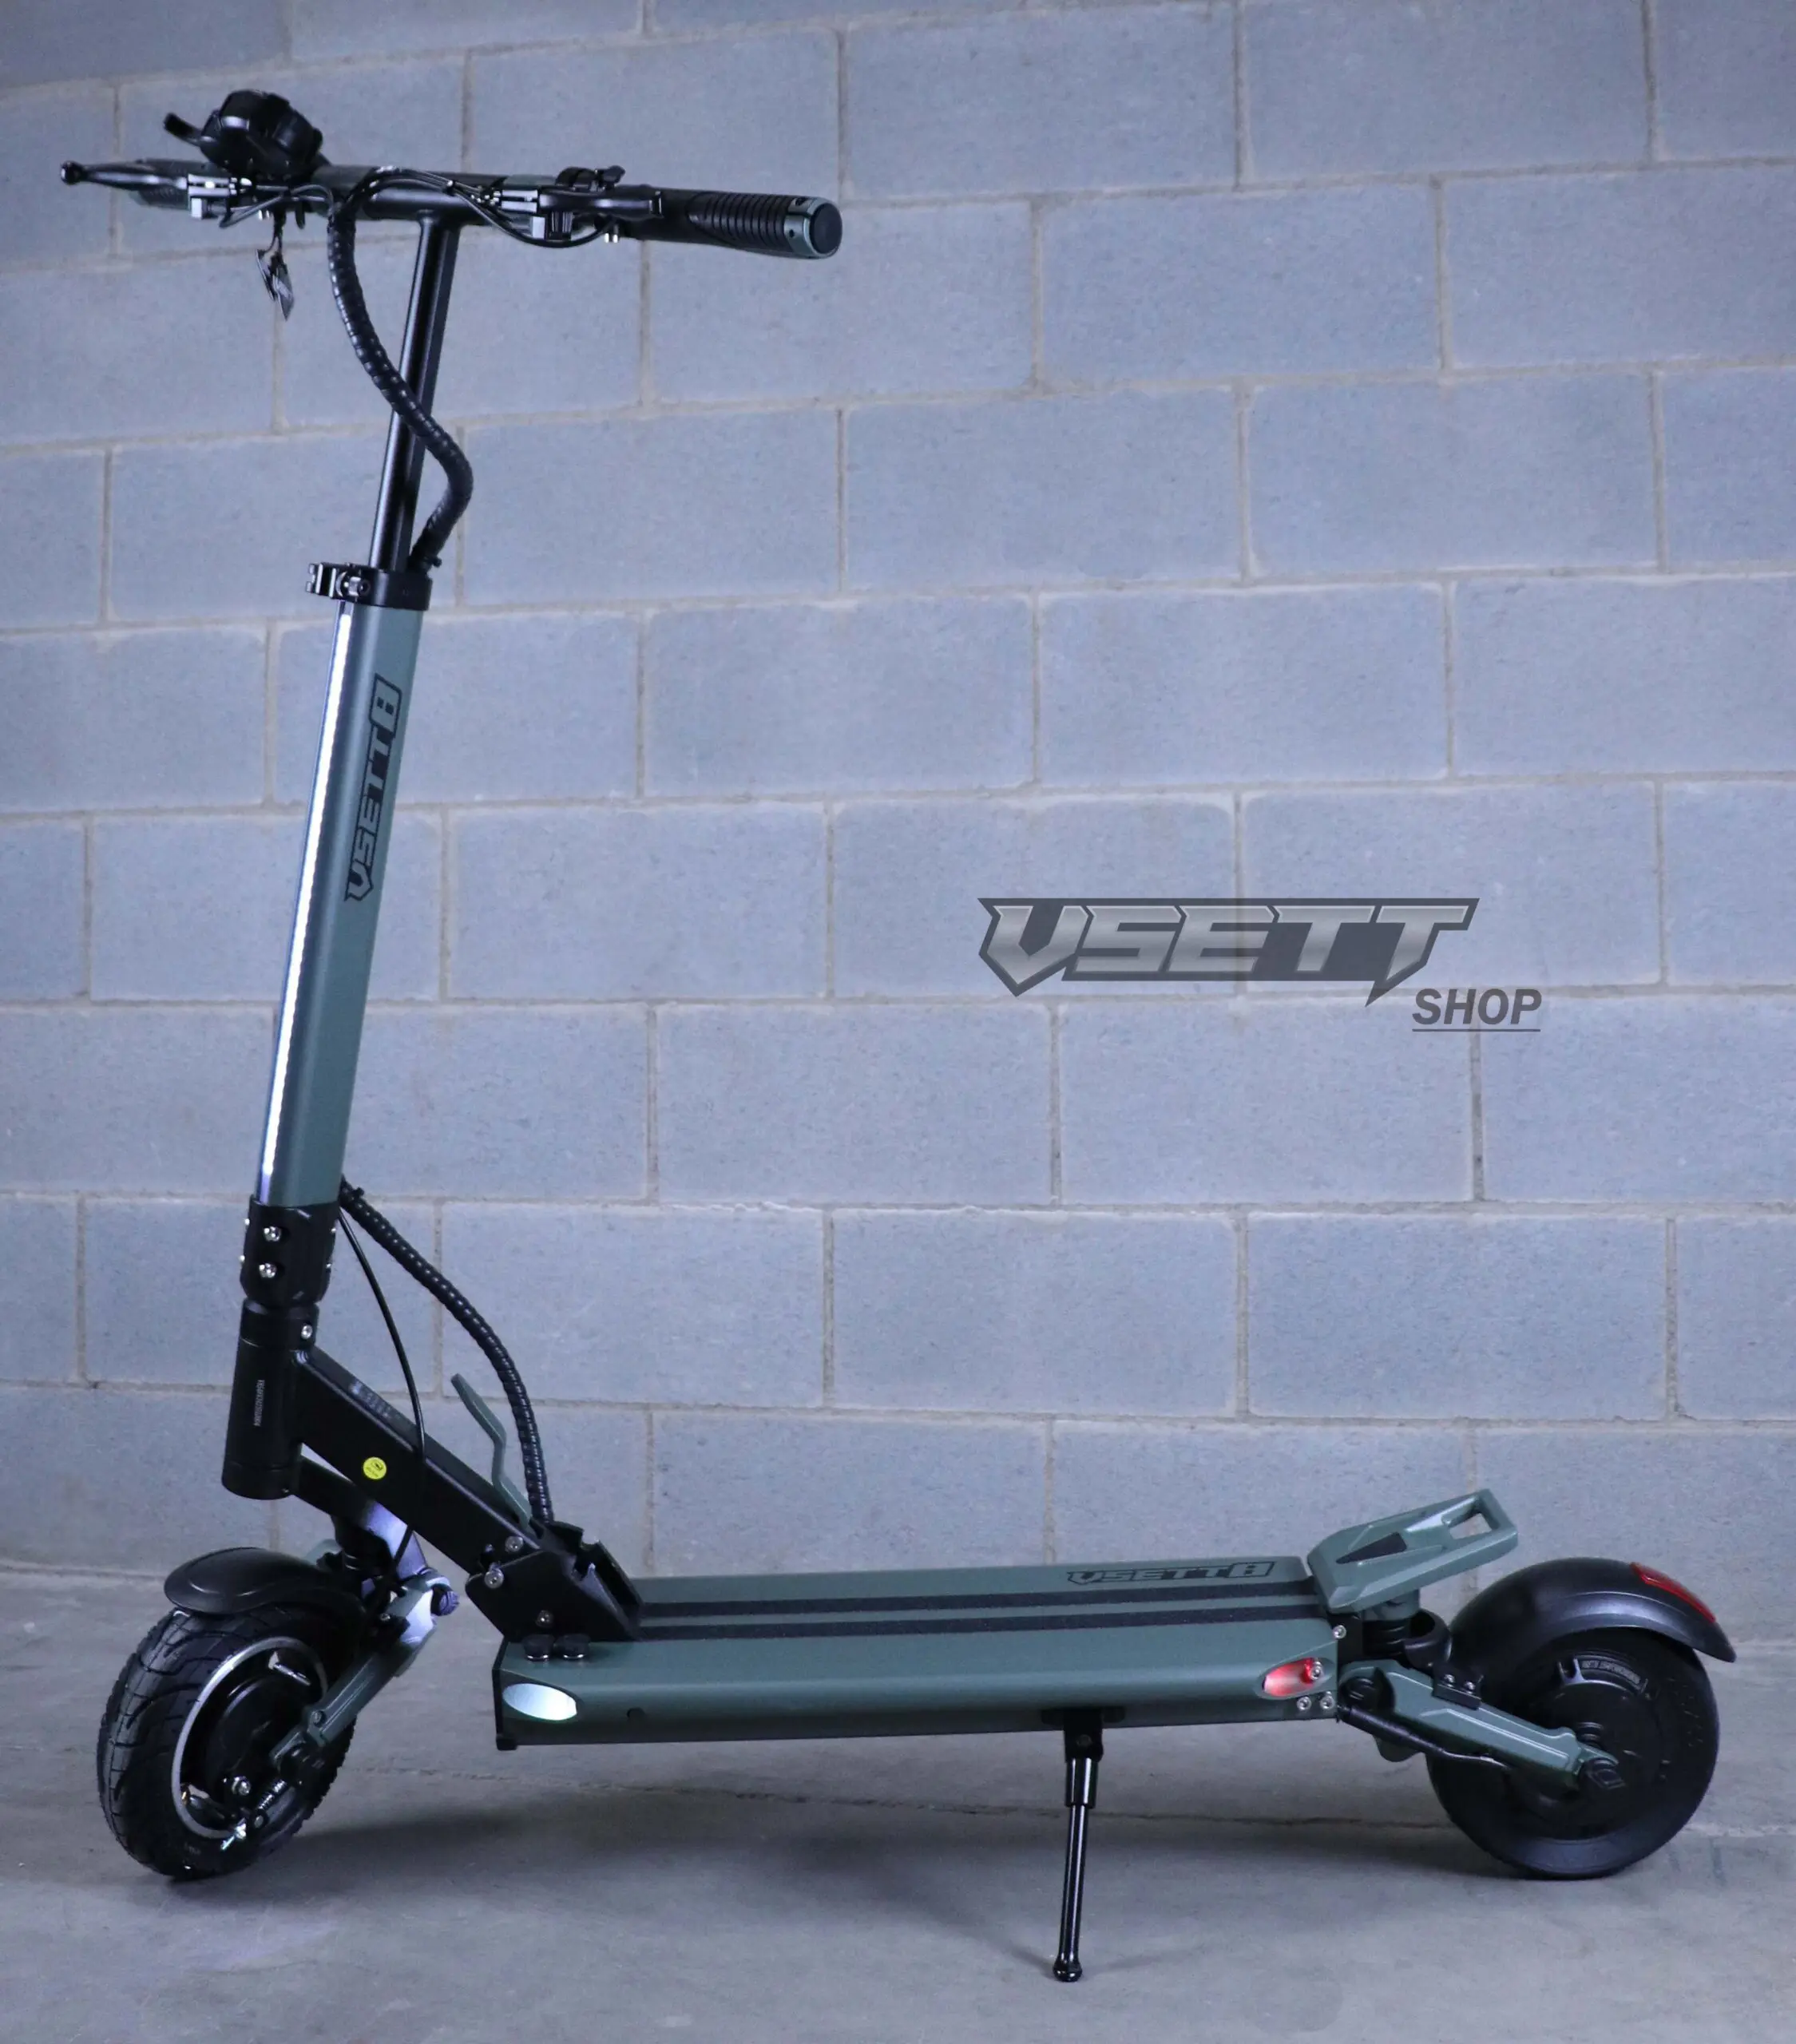 https://vsett-shop.com/wp-content/uploads/2021/04/vsett-8-plus-electric-scooter-6-scaled.jpg.webp